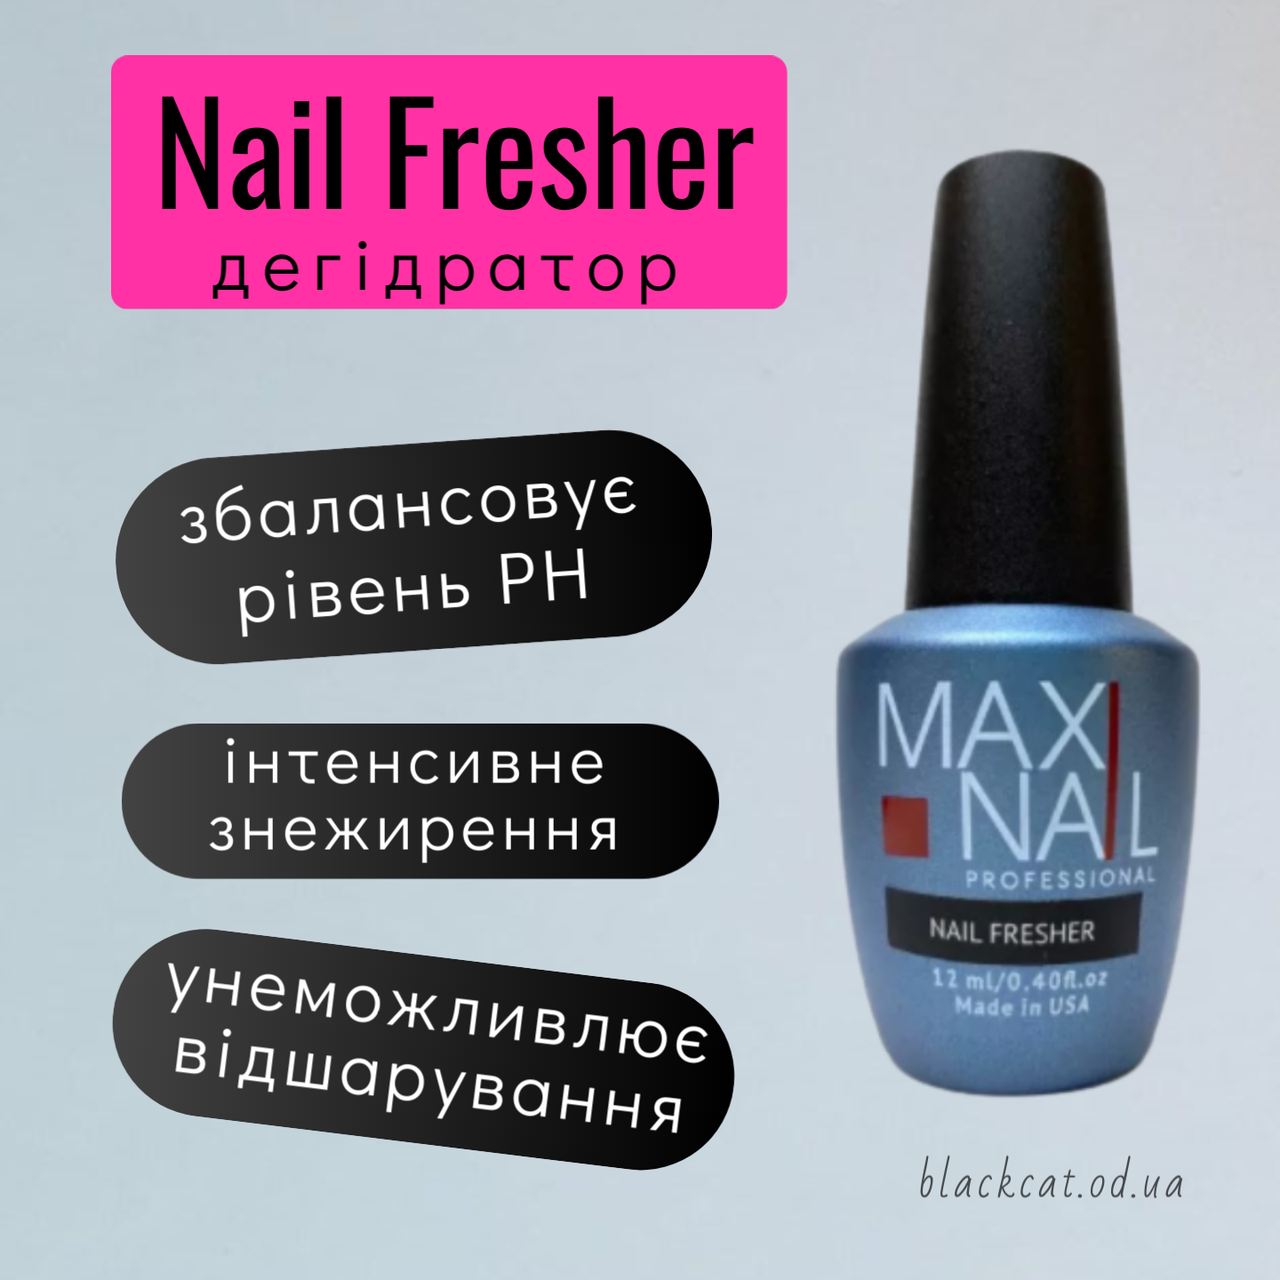 Дегідратор для нігтів Nail Fresher MAXI NAIL12 ml